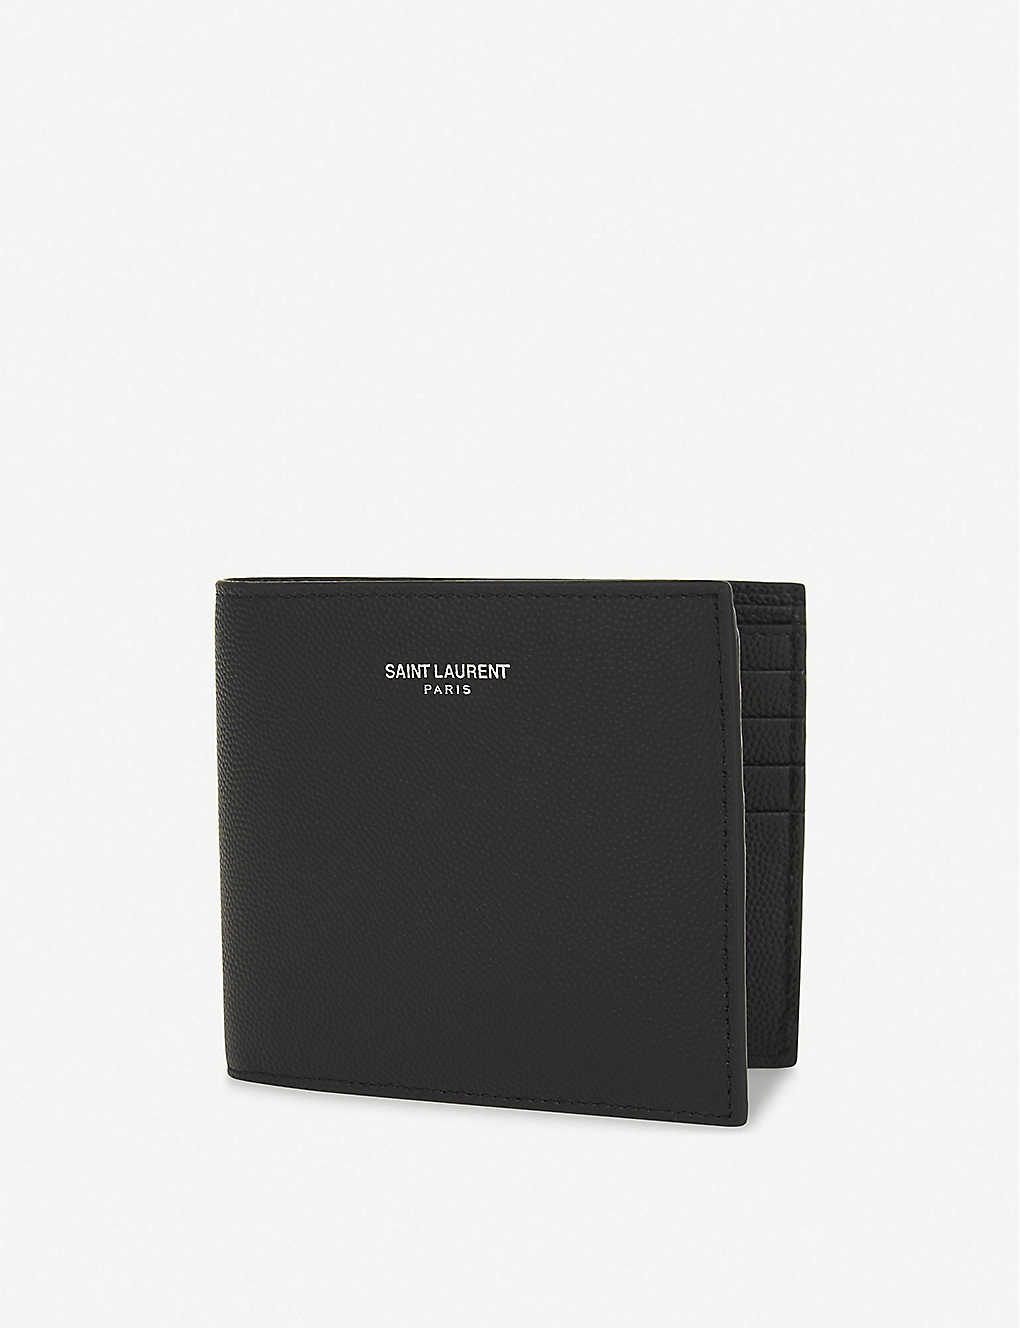 Saint Laurent Mens Black Branded Leather Billfold Wallet